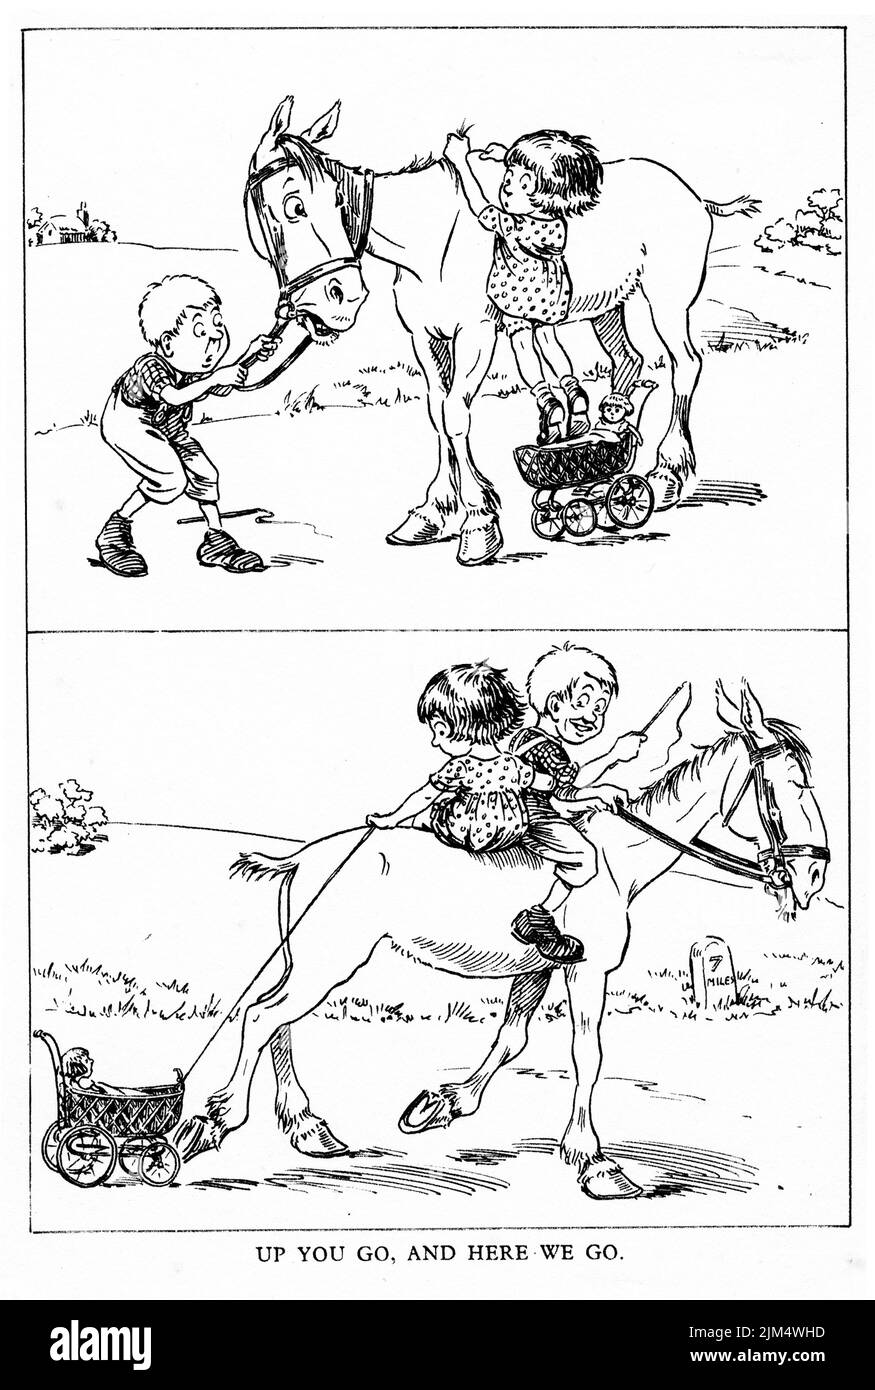 Illustration de style dessin animé de deux enfants à cheval Banque D'Images